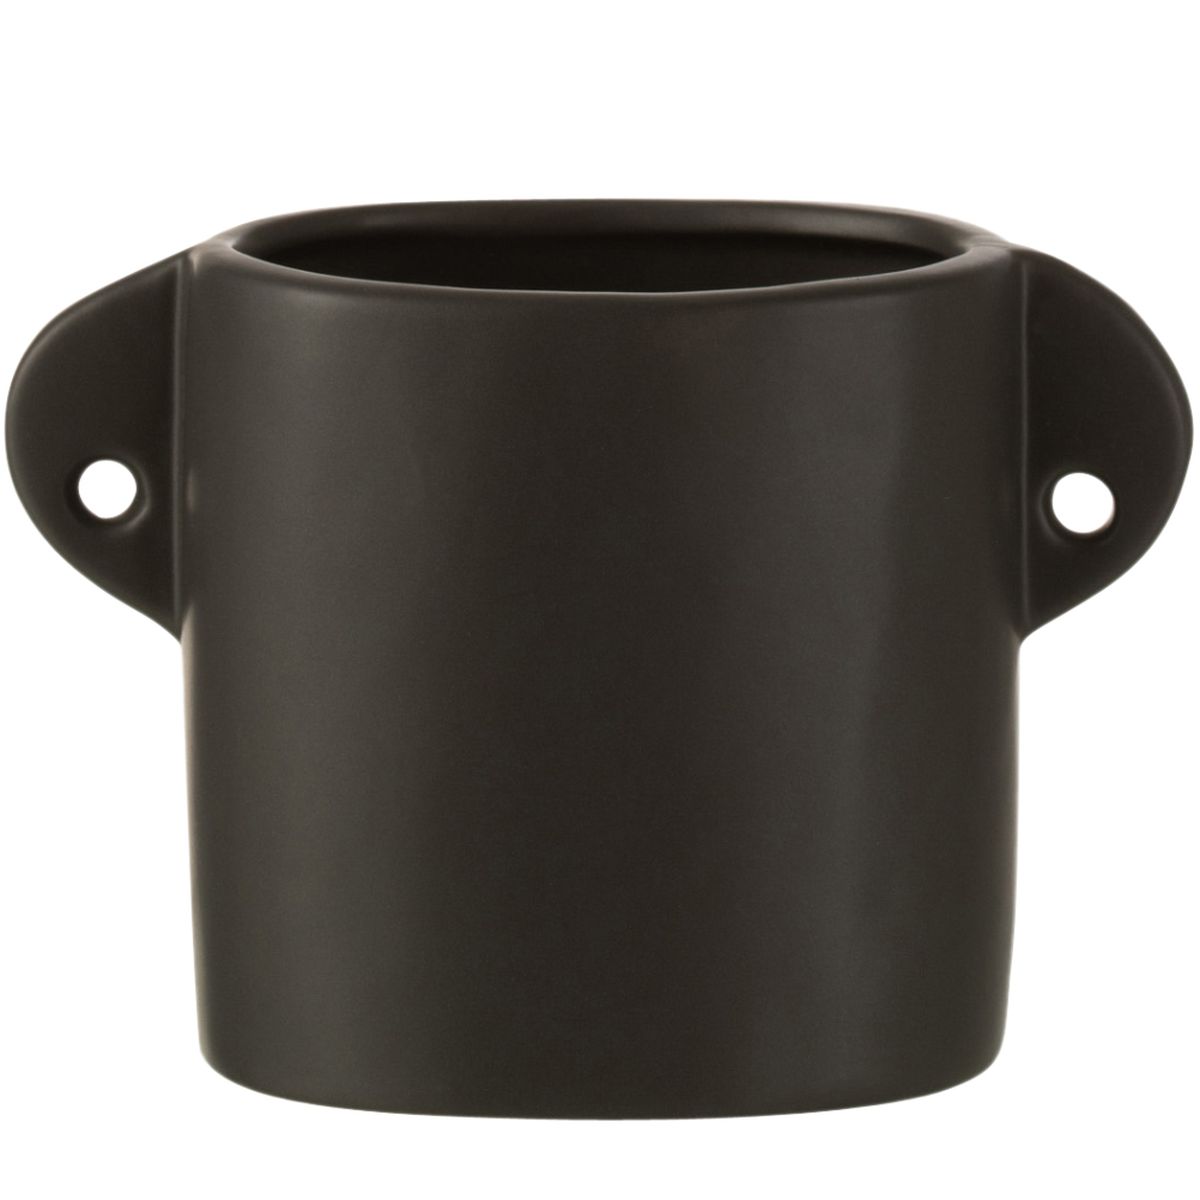 Cache-pot Renaissance en cramique de couleur Noir 11.5 cm